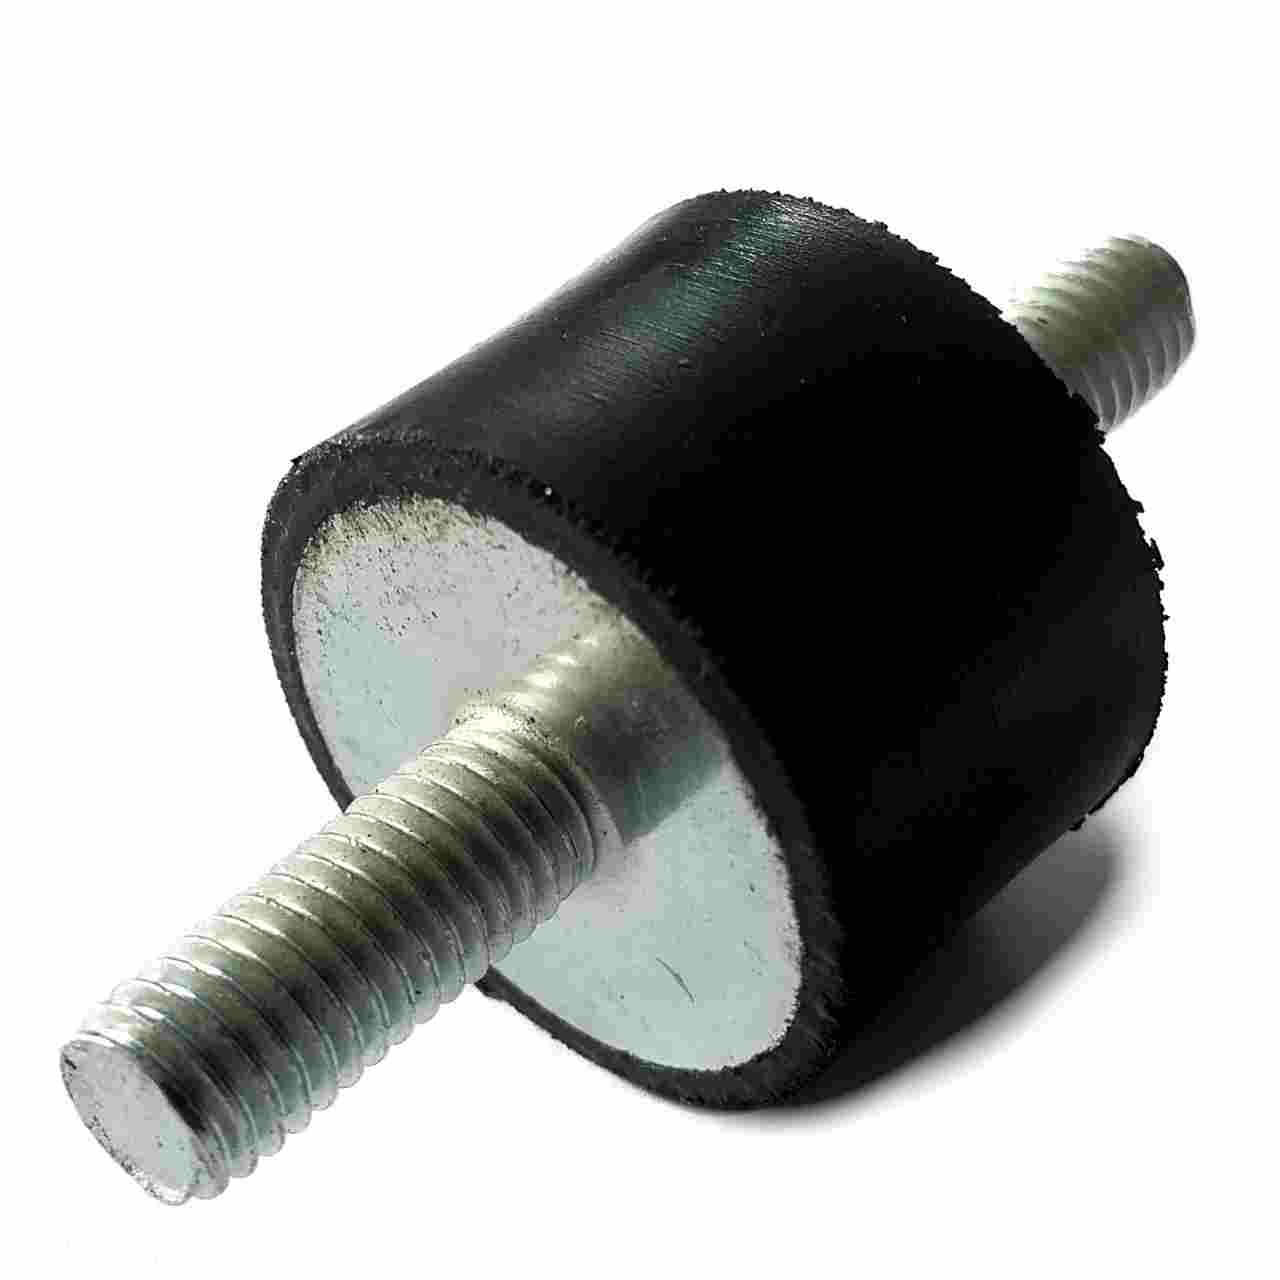 Puffer zylindrisch Aussengewinde, M4x10, Ø15 mm, 8 mm hoch (Abb. ähnlich)